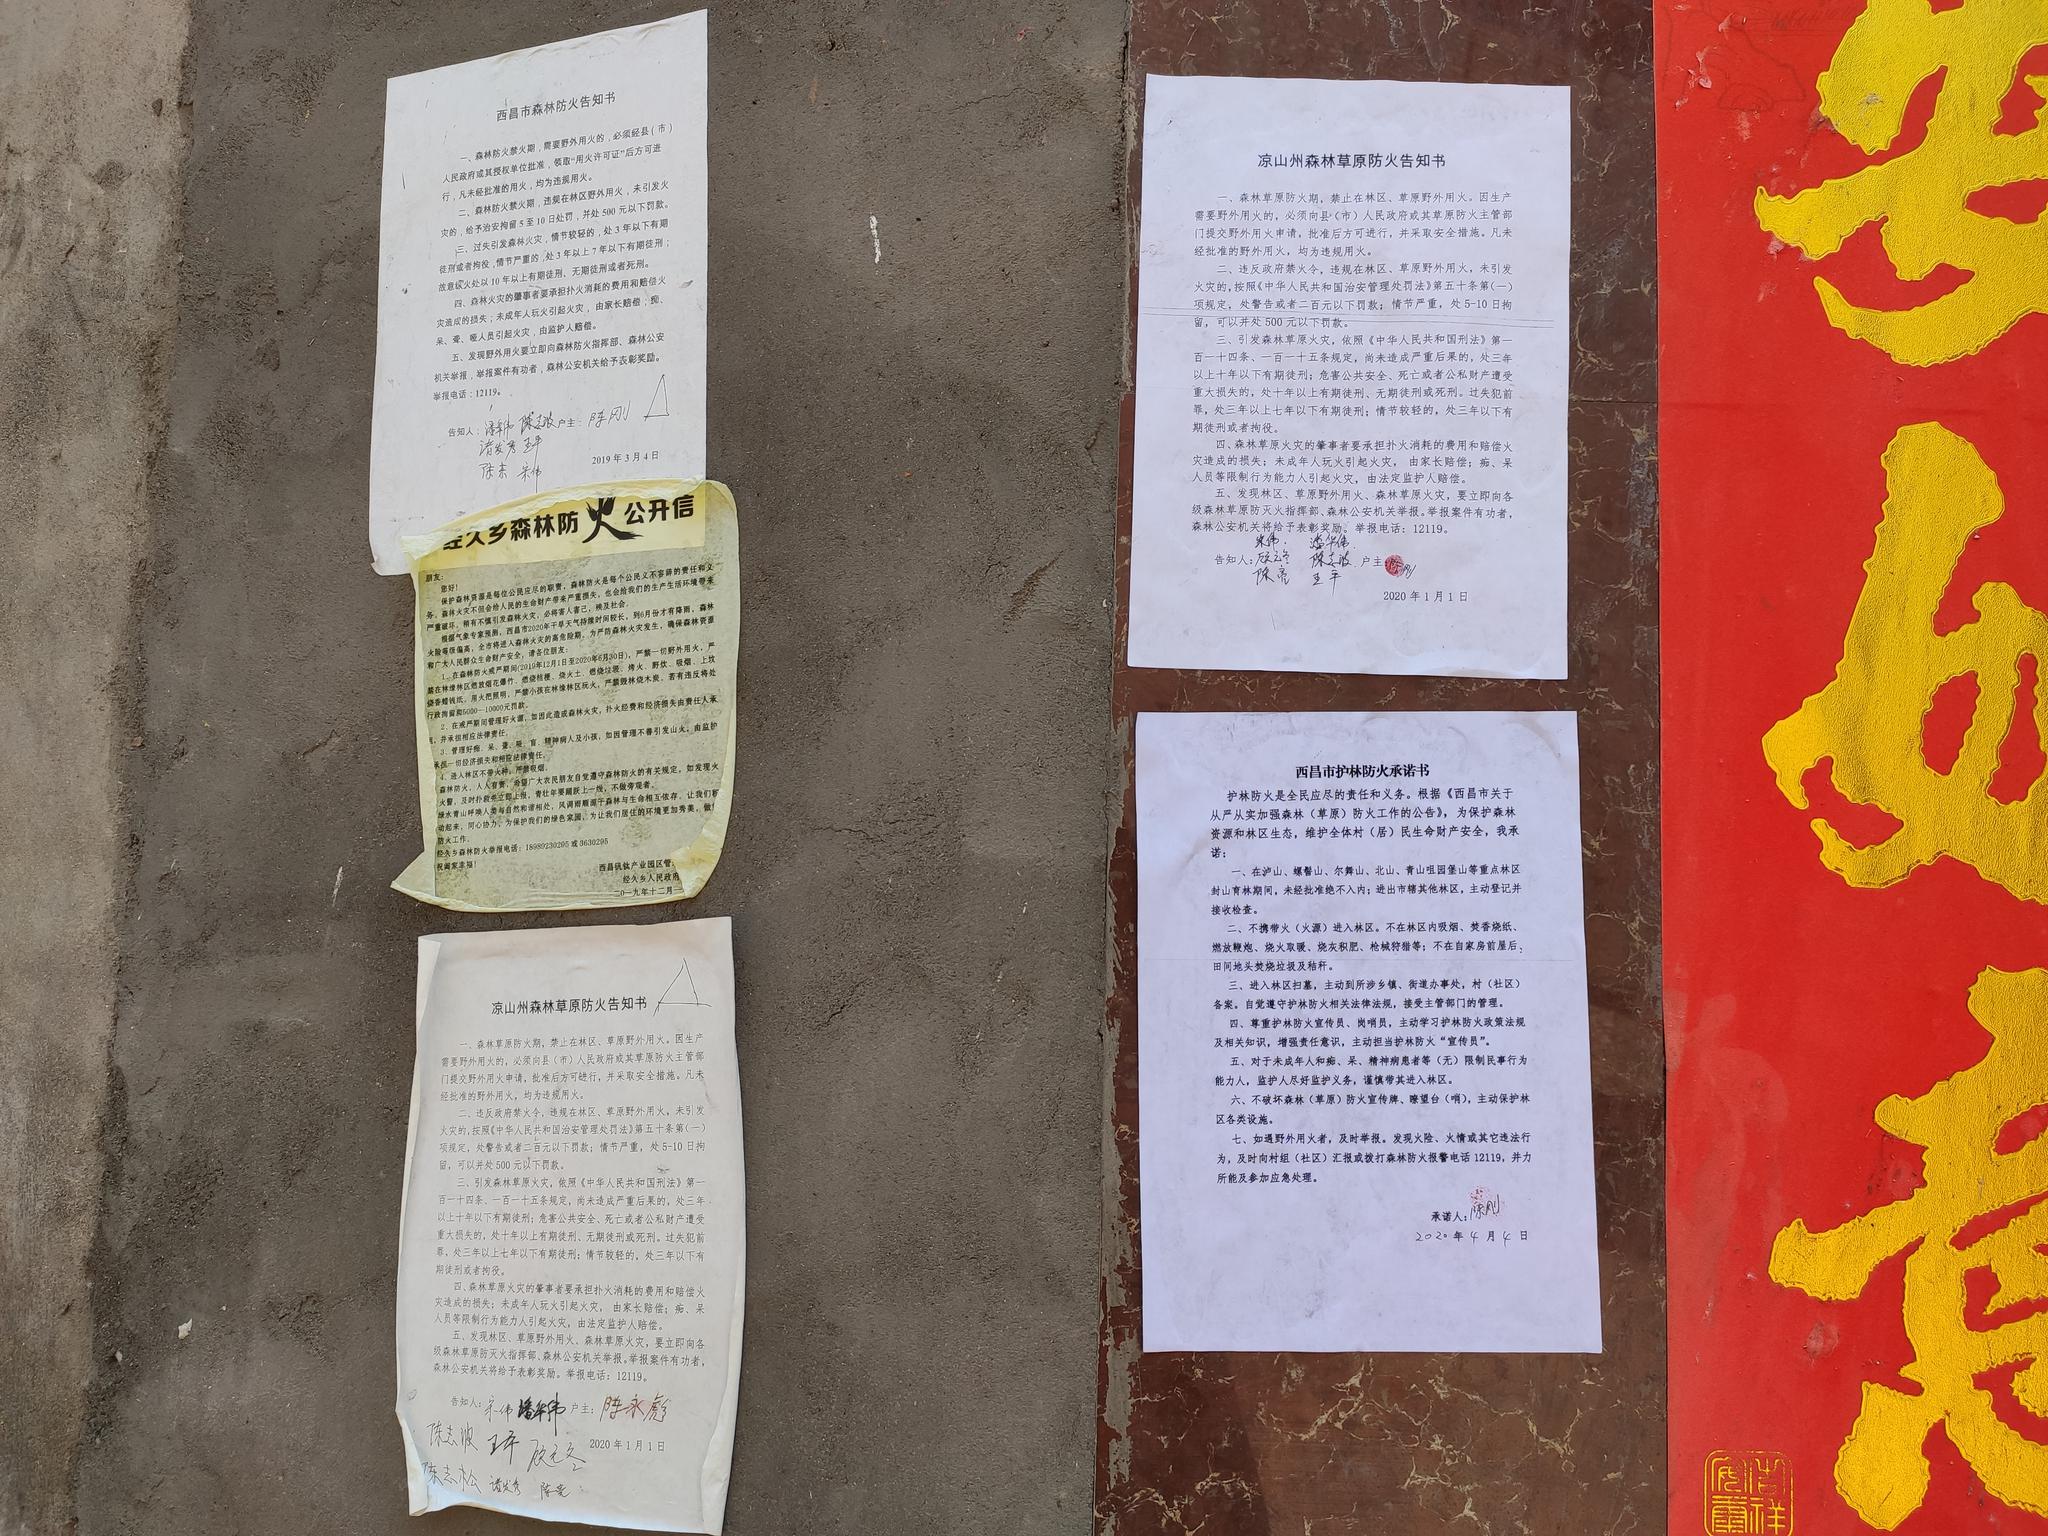 马鞍山村很多户人家门前都贴着近两年村民签过字按了手印的防火告知书或承诺书。其中一户贴了5张防火相关文件，最早一张是2019年3月4日的，最新一张是2020年4月4日。